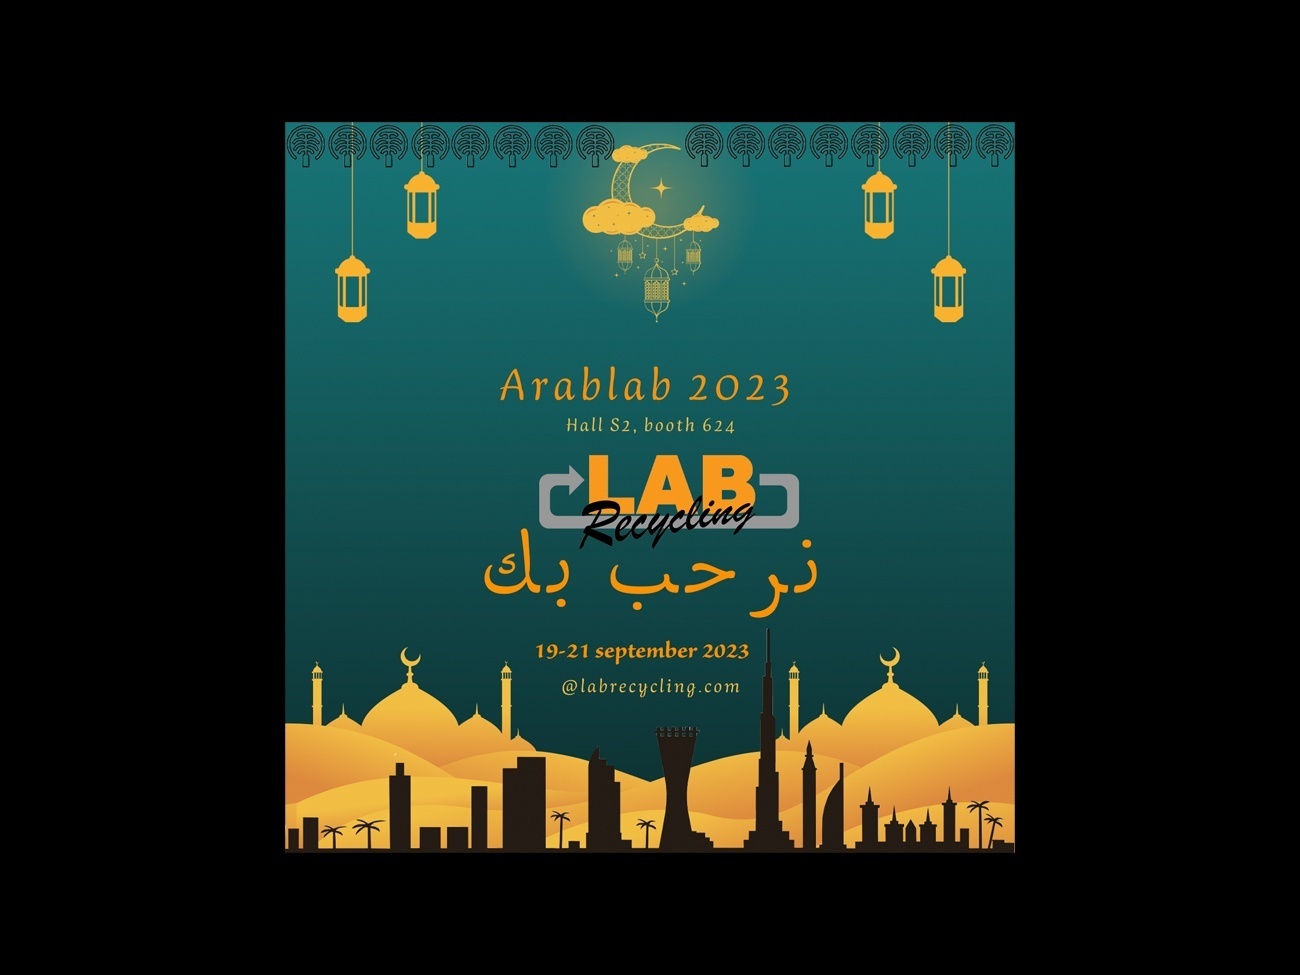 Labrecycling ist auf der Arablab 2023 präsent